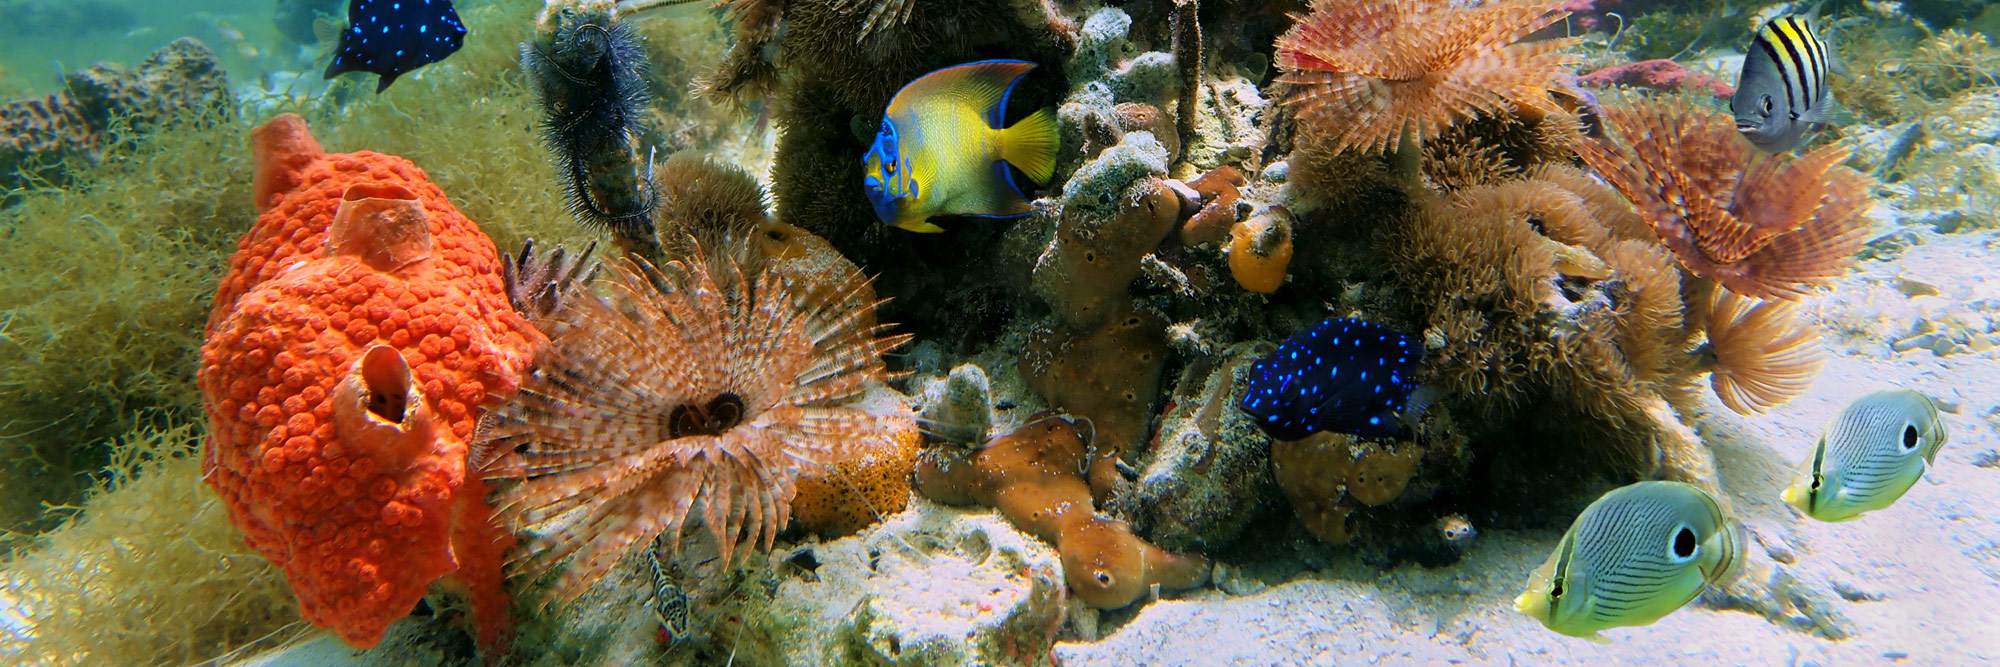 Florida Keys Coral and Fish